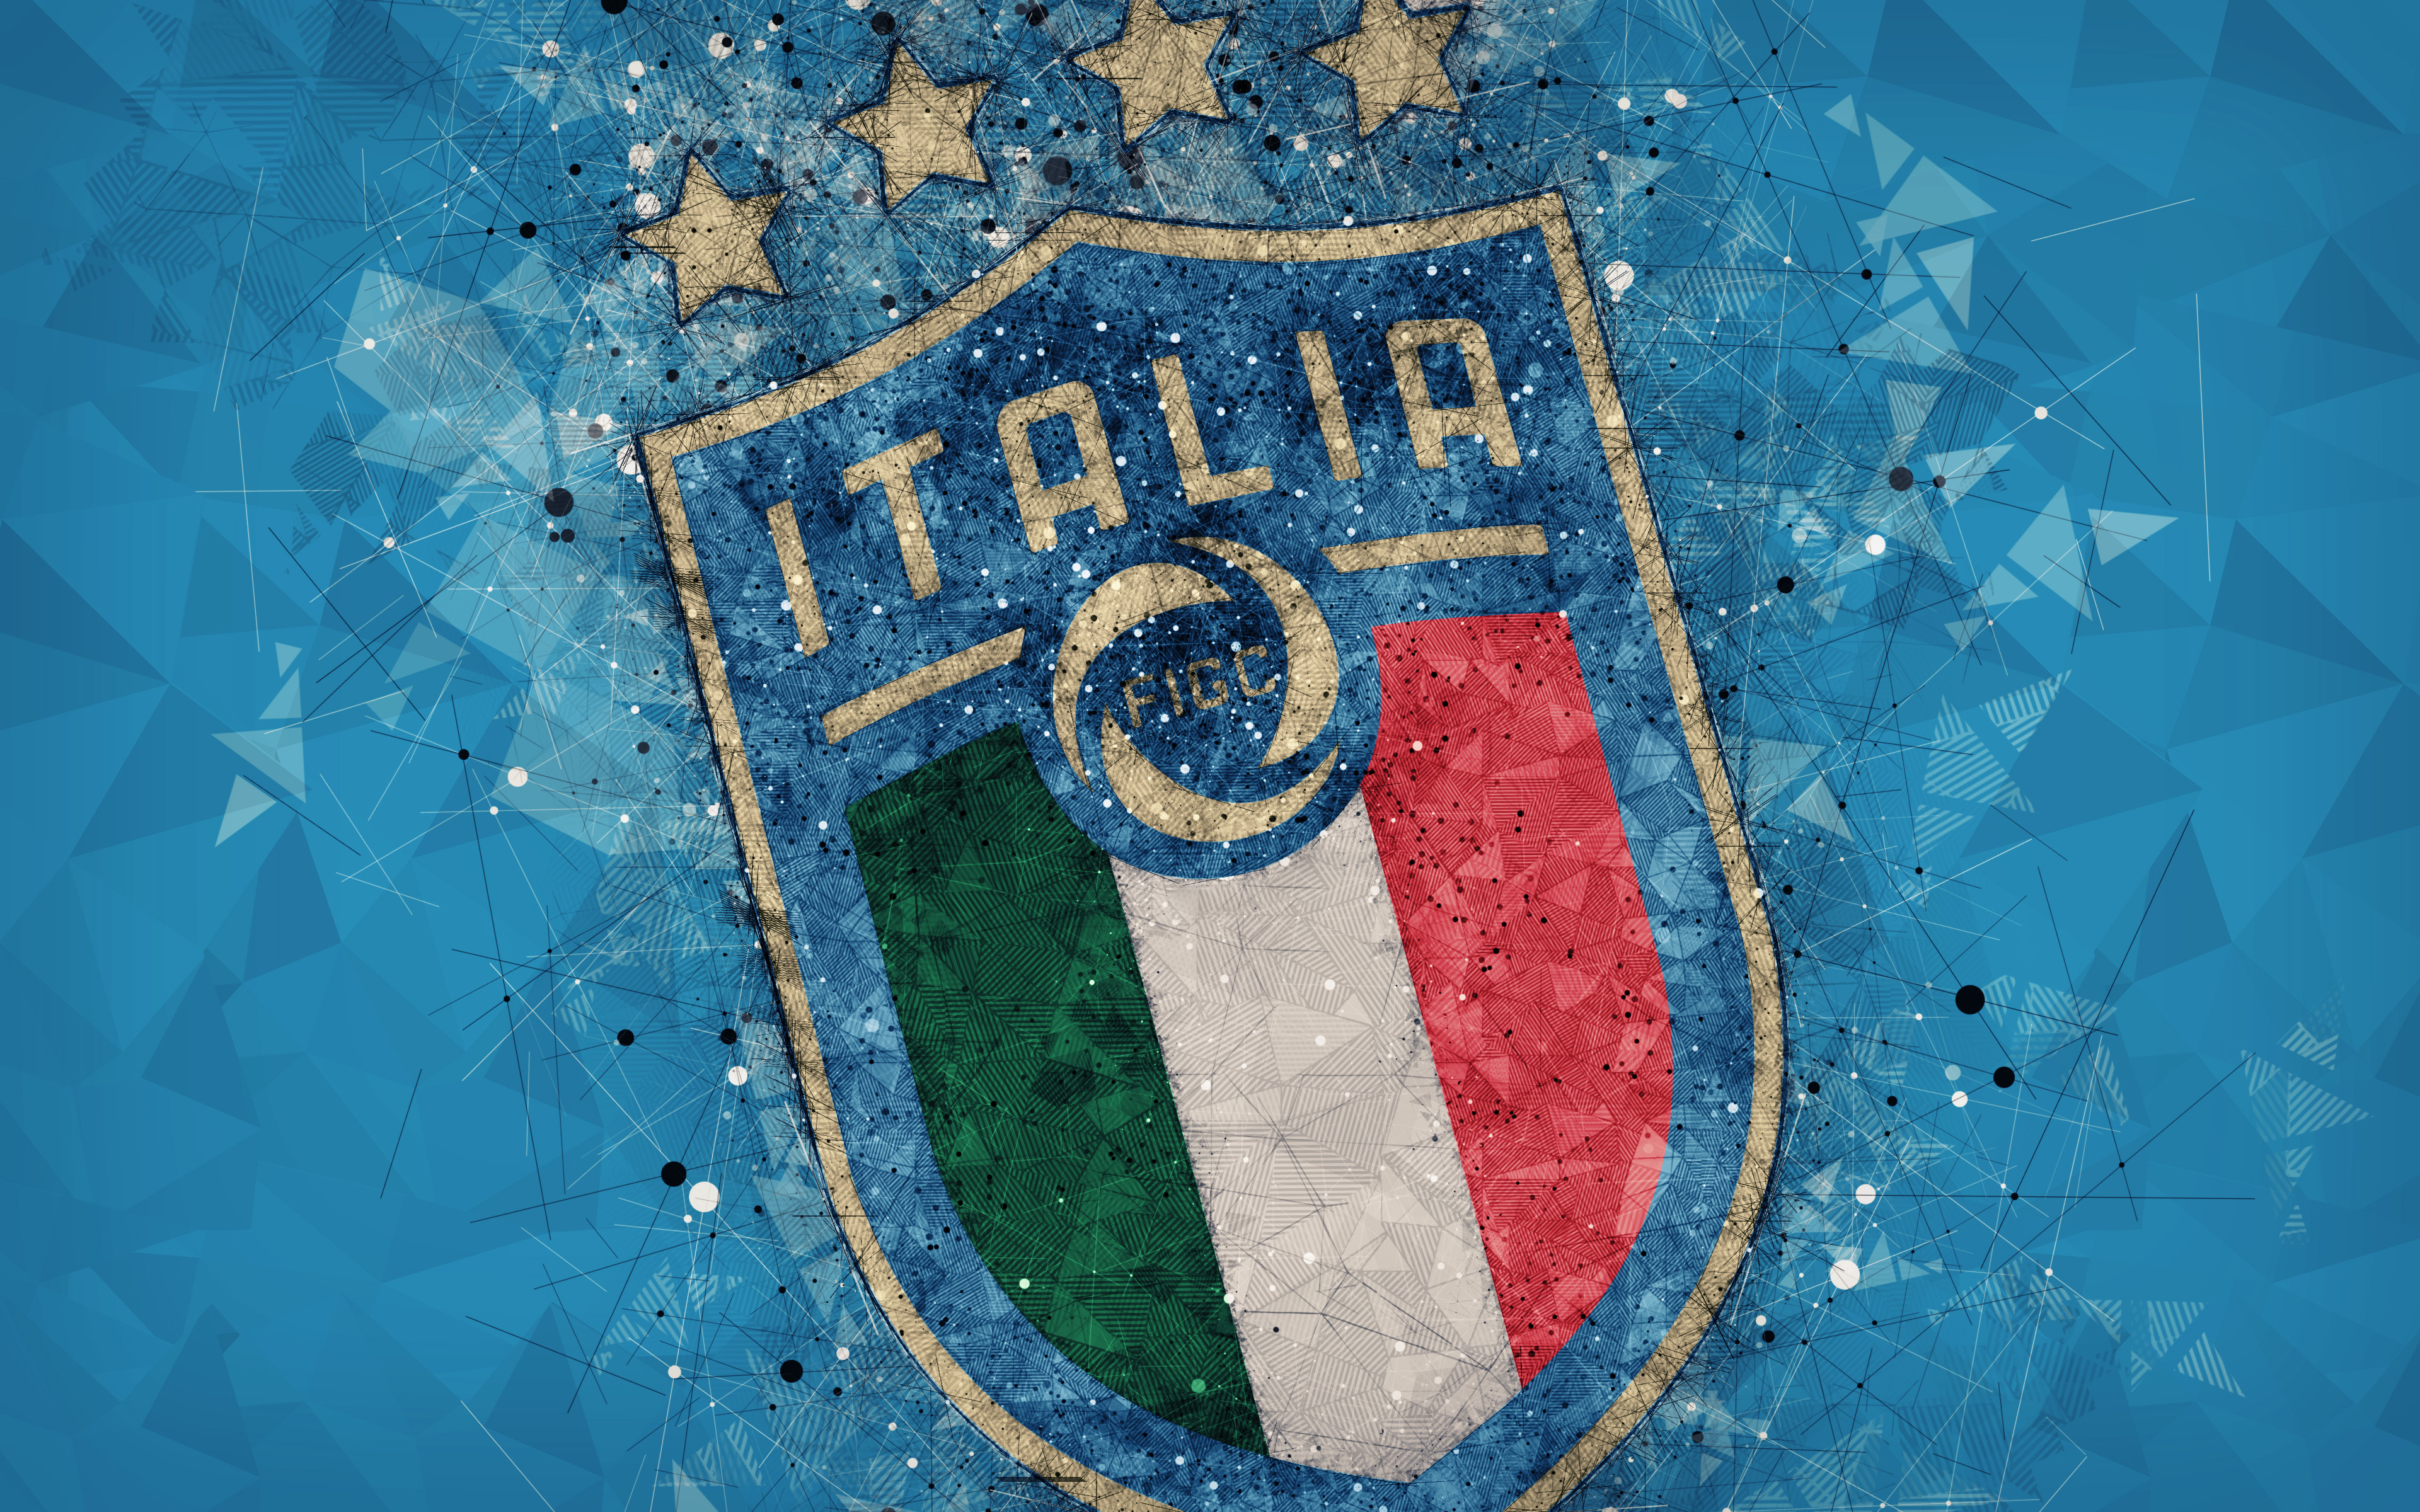 Laden Sie Italienische Fußballnationalmannschaft HD-Desktop-Hintergründe herunter